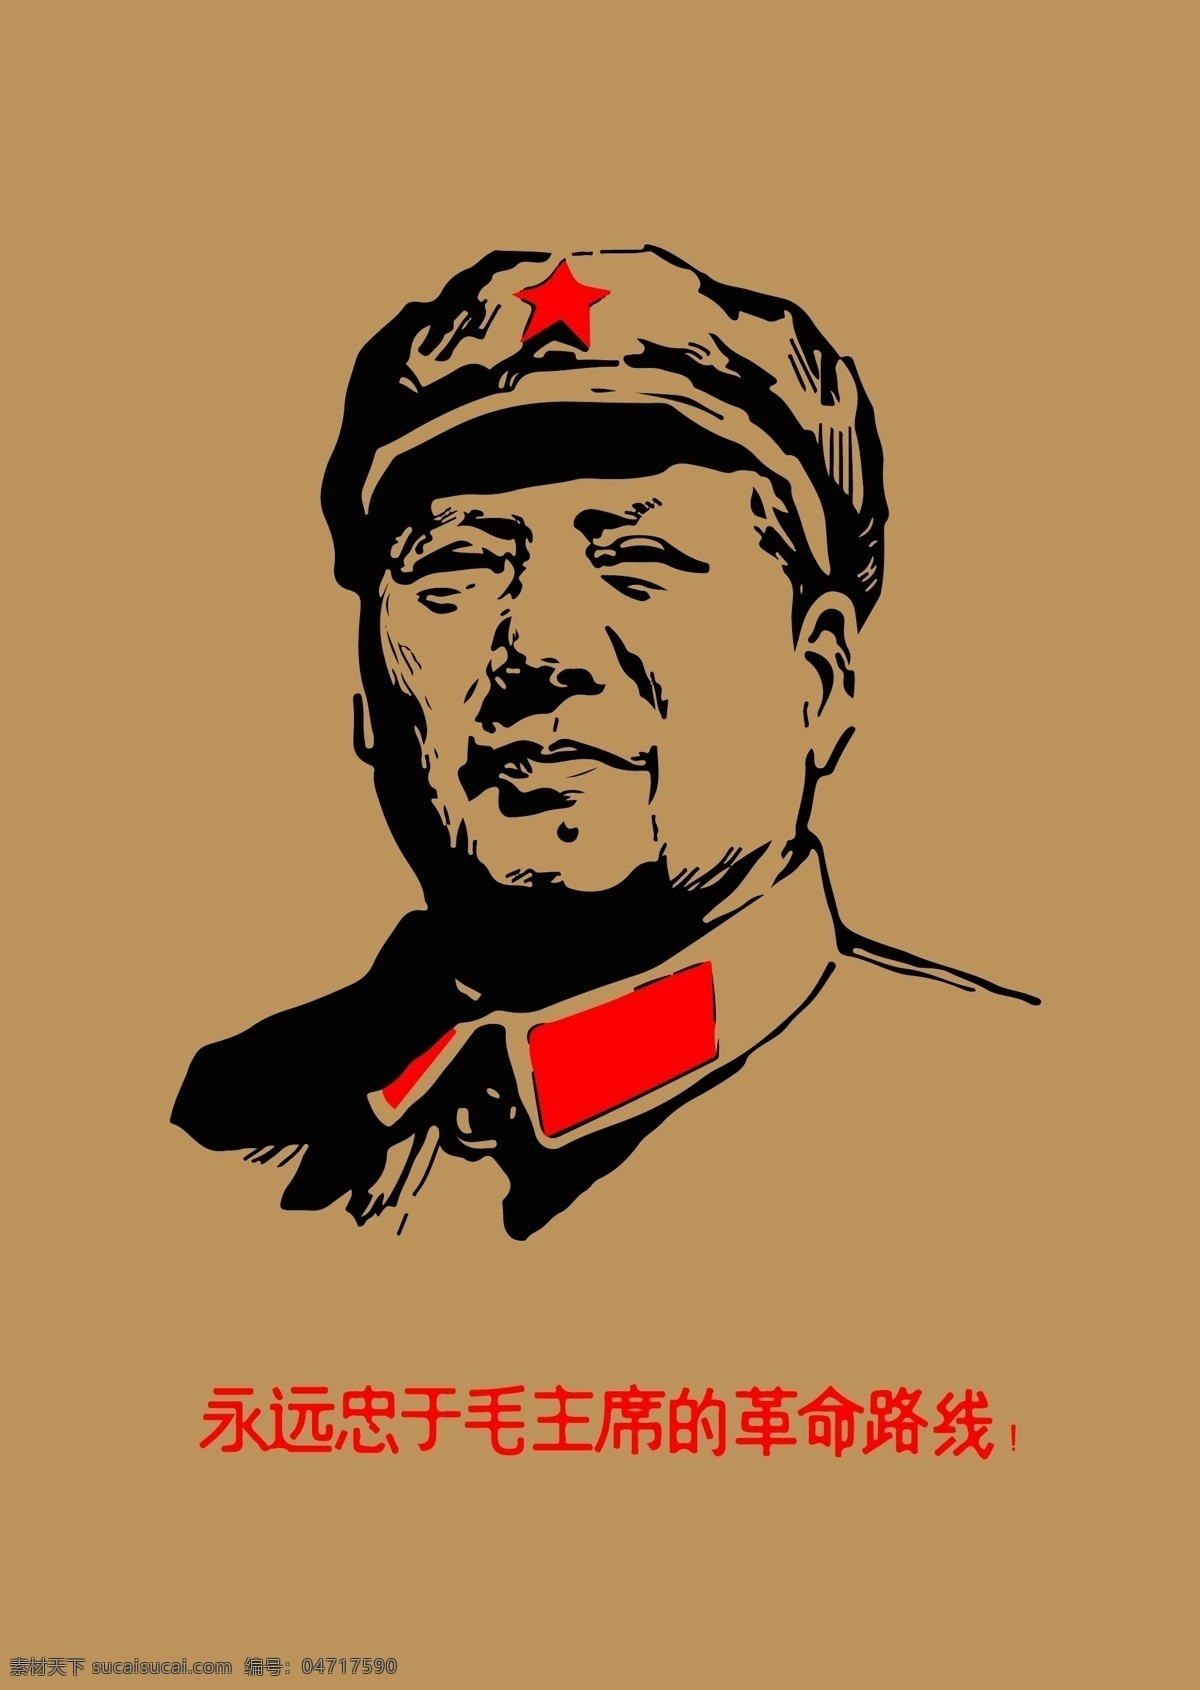 毛主席 毛泽东 毛爷爷 复古海报 革命路线